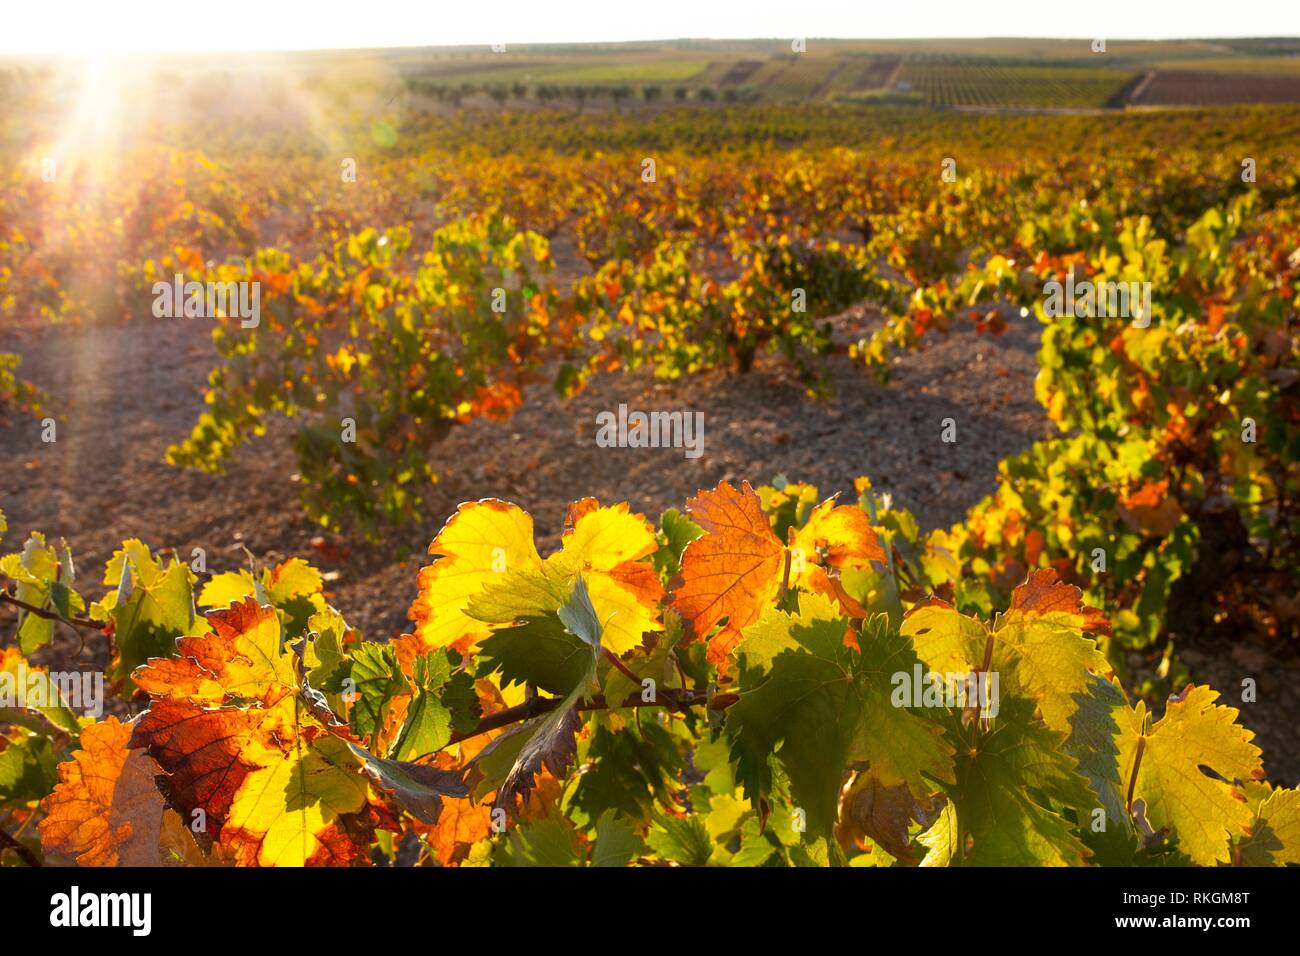 Plantation de vignes sous le coucher du soleil d'octobre à la lumière région viticole de Tierra de Barros, Estrémadure, Espagne. Banque D'Images